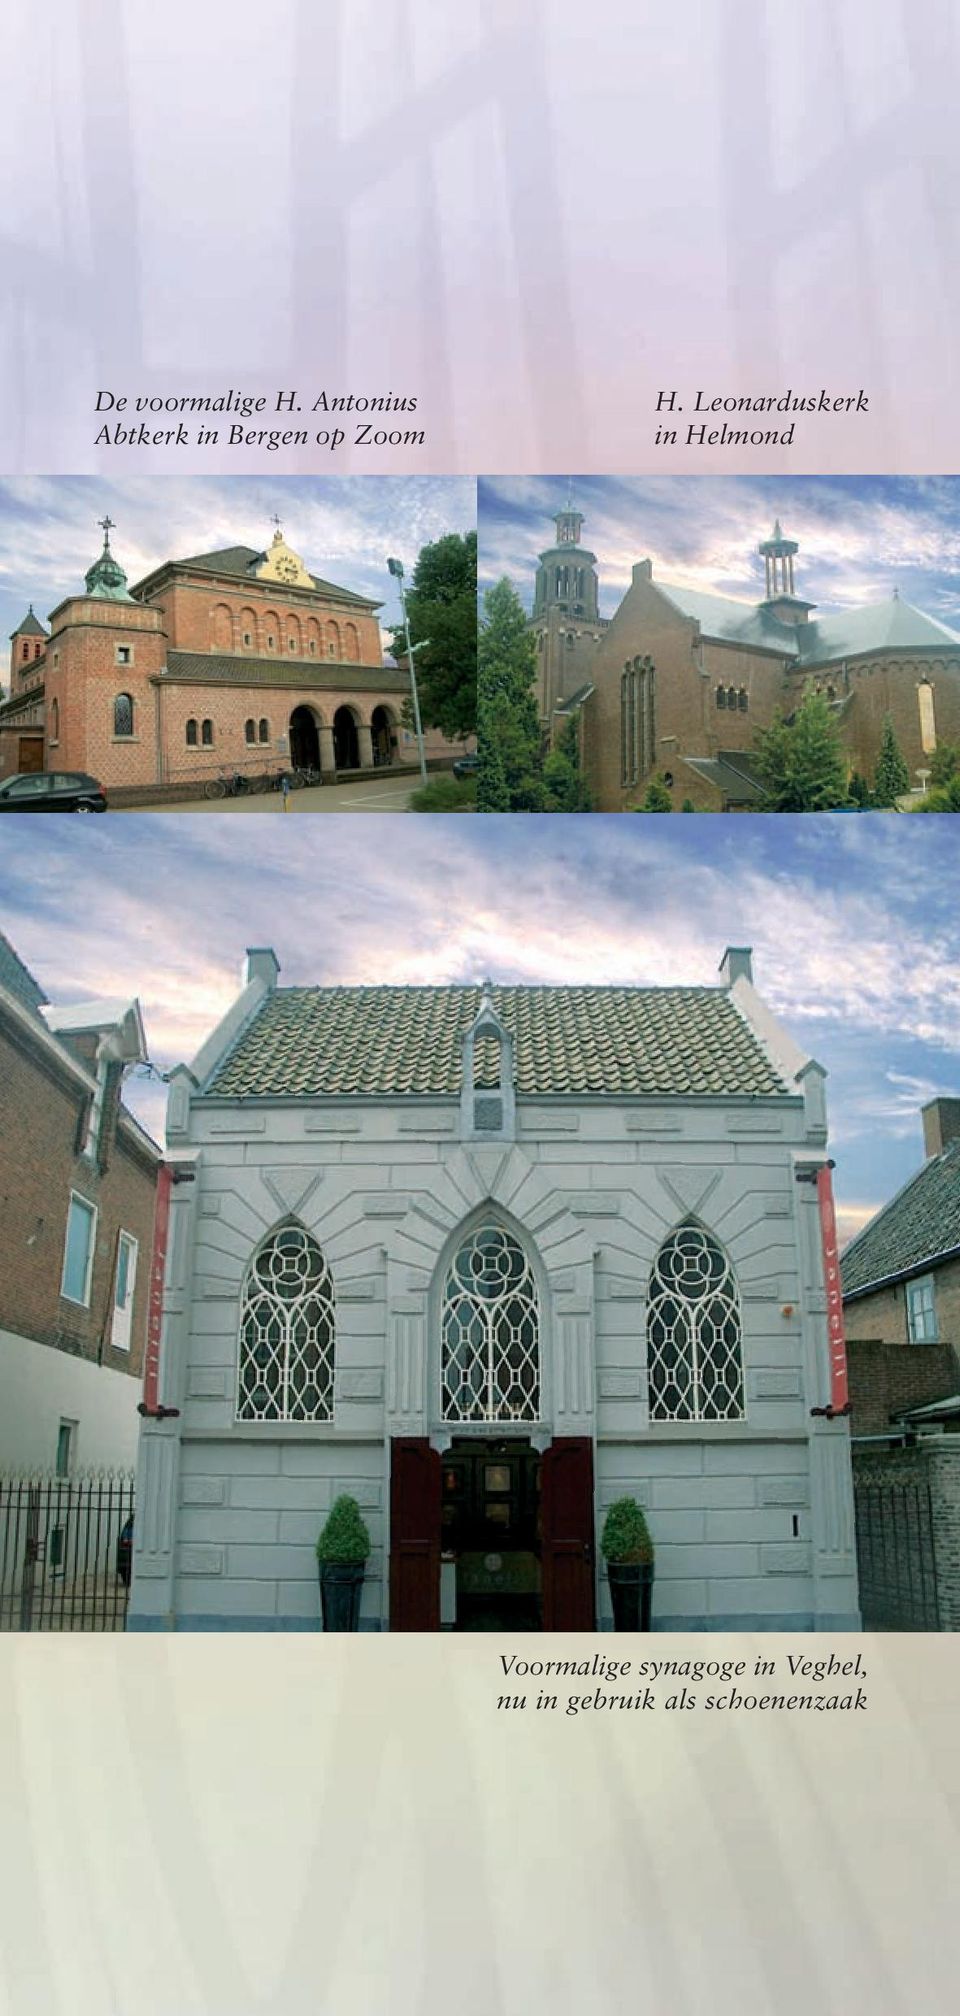 H. Leonarduskerk in Helmond